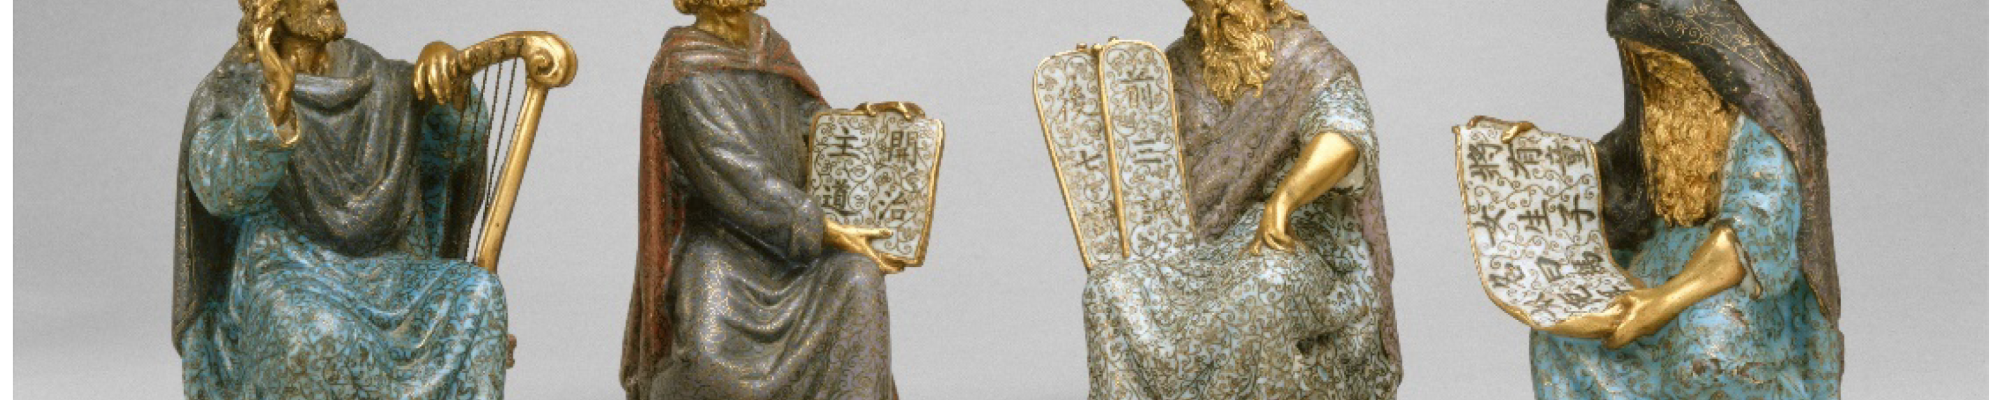 Figuras-biblicas-del-Museo-Metropolitano-de-Arte